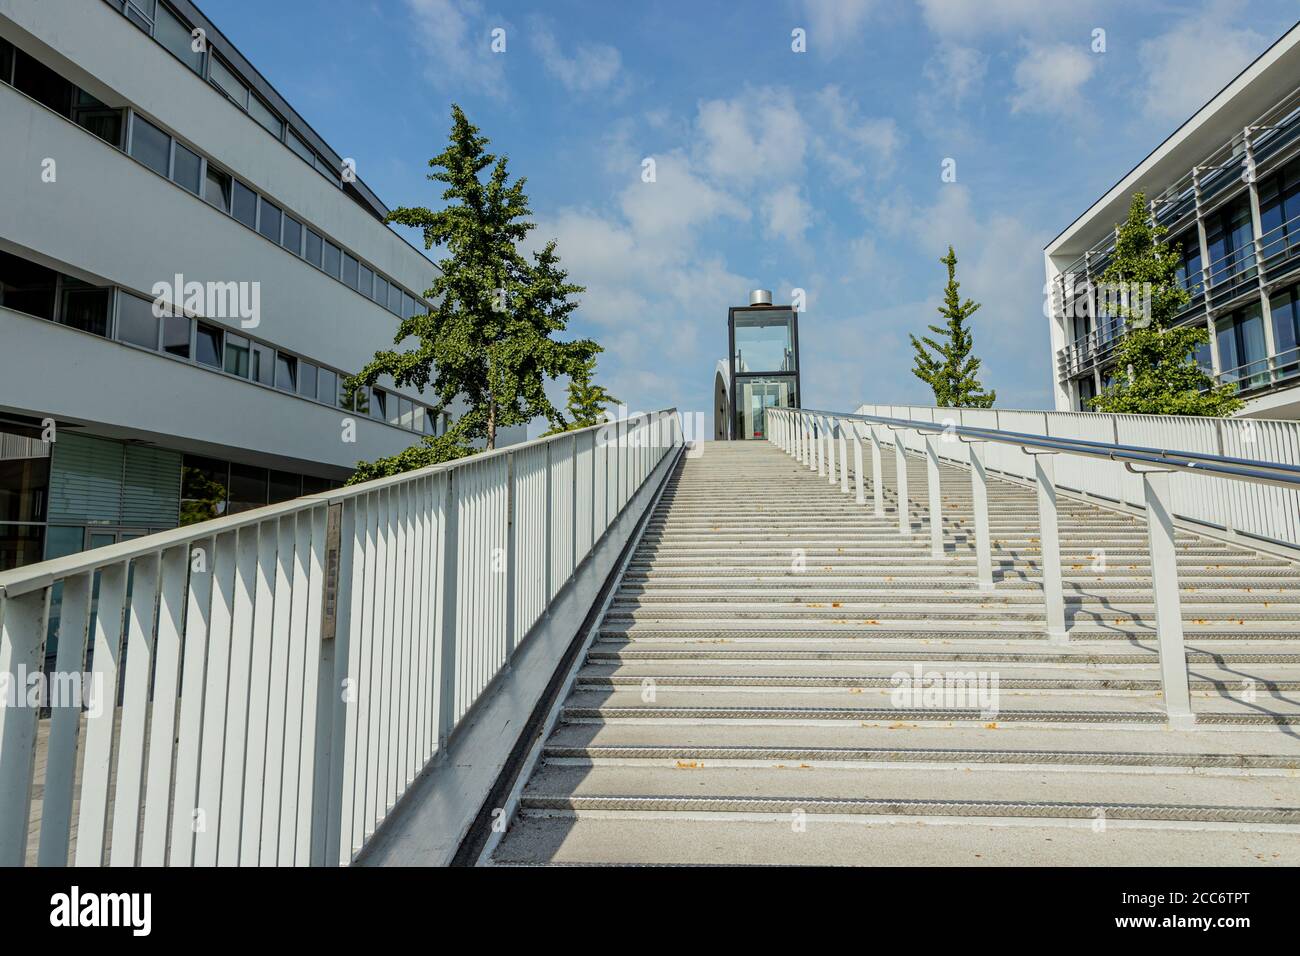 Faible perspective des escaliers du pont haut (Hoge Brug) avec son ascenseur.  Pont vélo ou piéton au-dessus de Maas (Meuse) à Maastricht, da ensoleillé  Photo Stock - Alamy